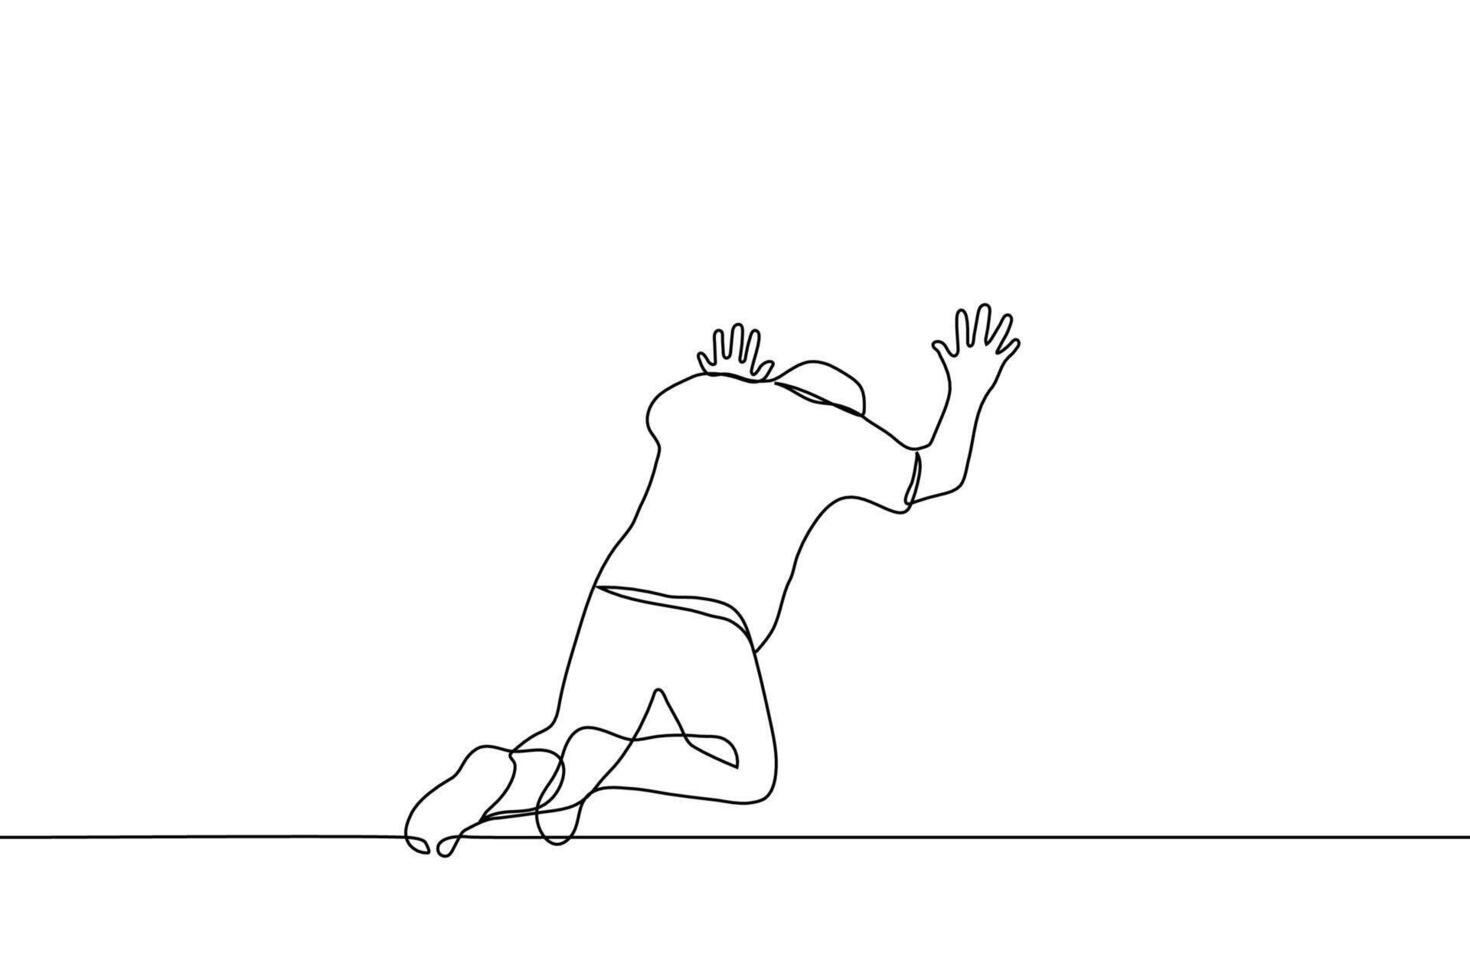 uomo si inginocchia riposo il suo palme contro il parete il suo testa è giù - uno linea disegno vettore. concetto di pesantezza, mentale o fisico crisi, disperazione o dolore vettore